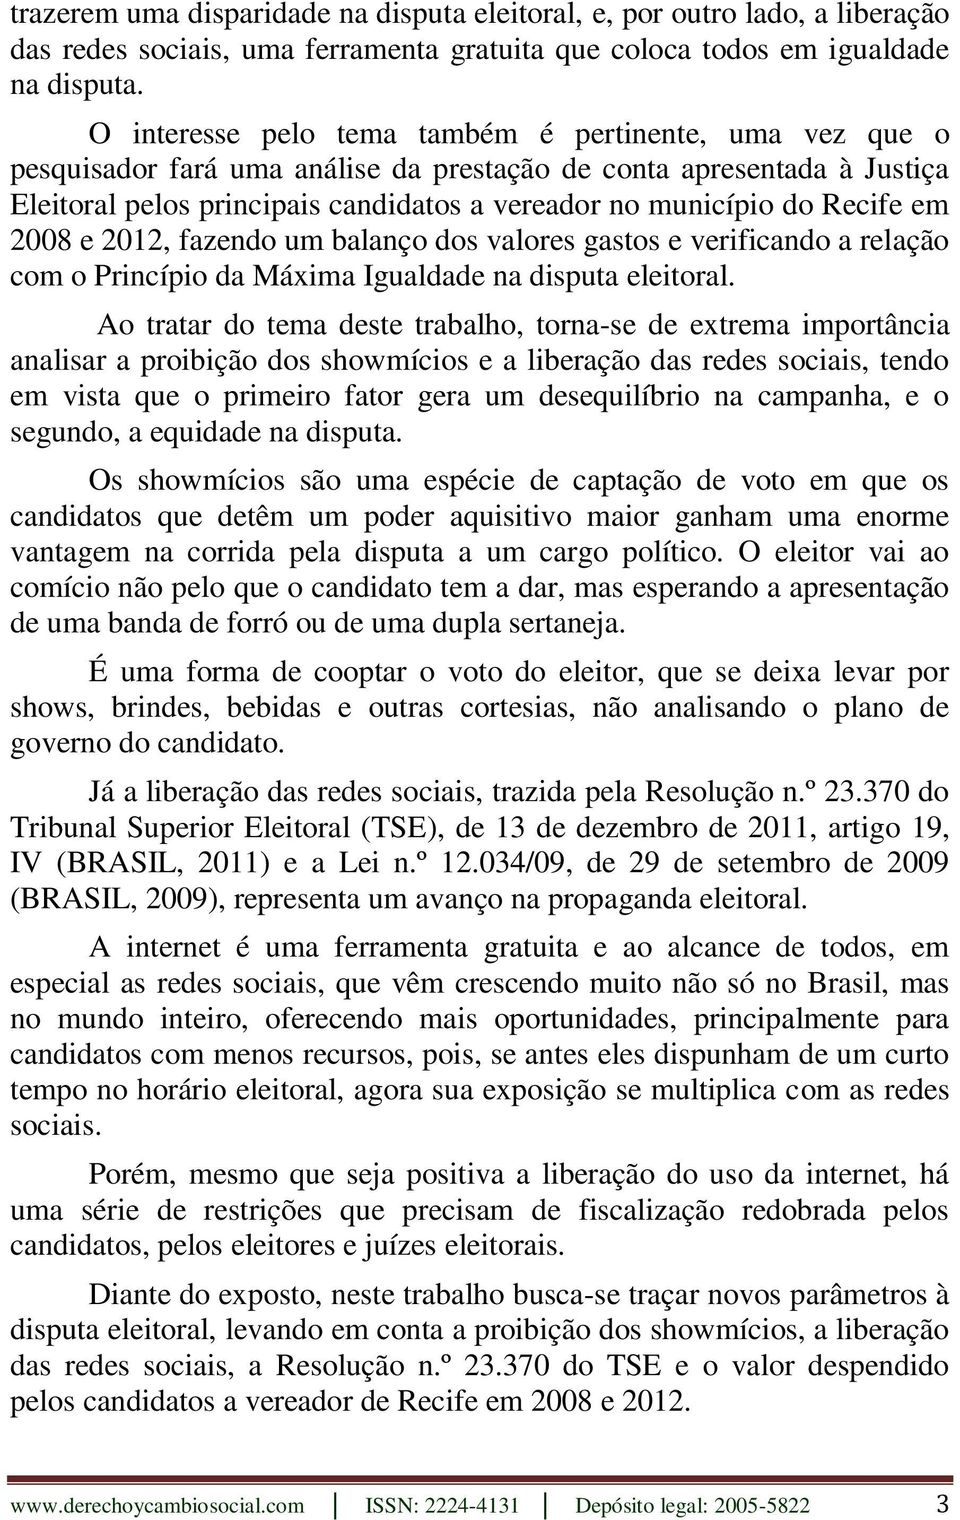 Recife em 2008 e 2012, fazendo um balanço dos valores gastos e verificando a relação com o Princípio da Máxima Igualdade na disputa eleitoral.